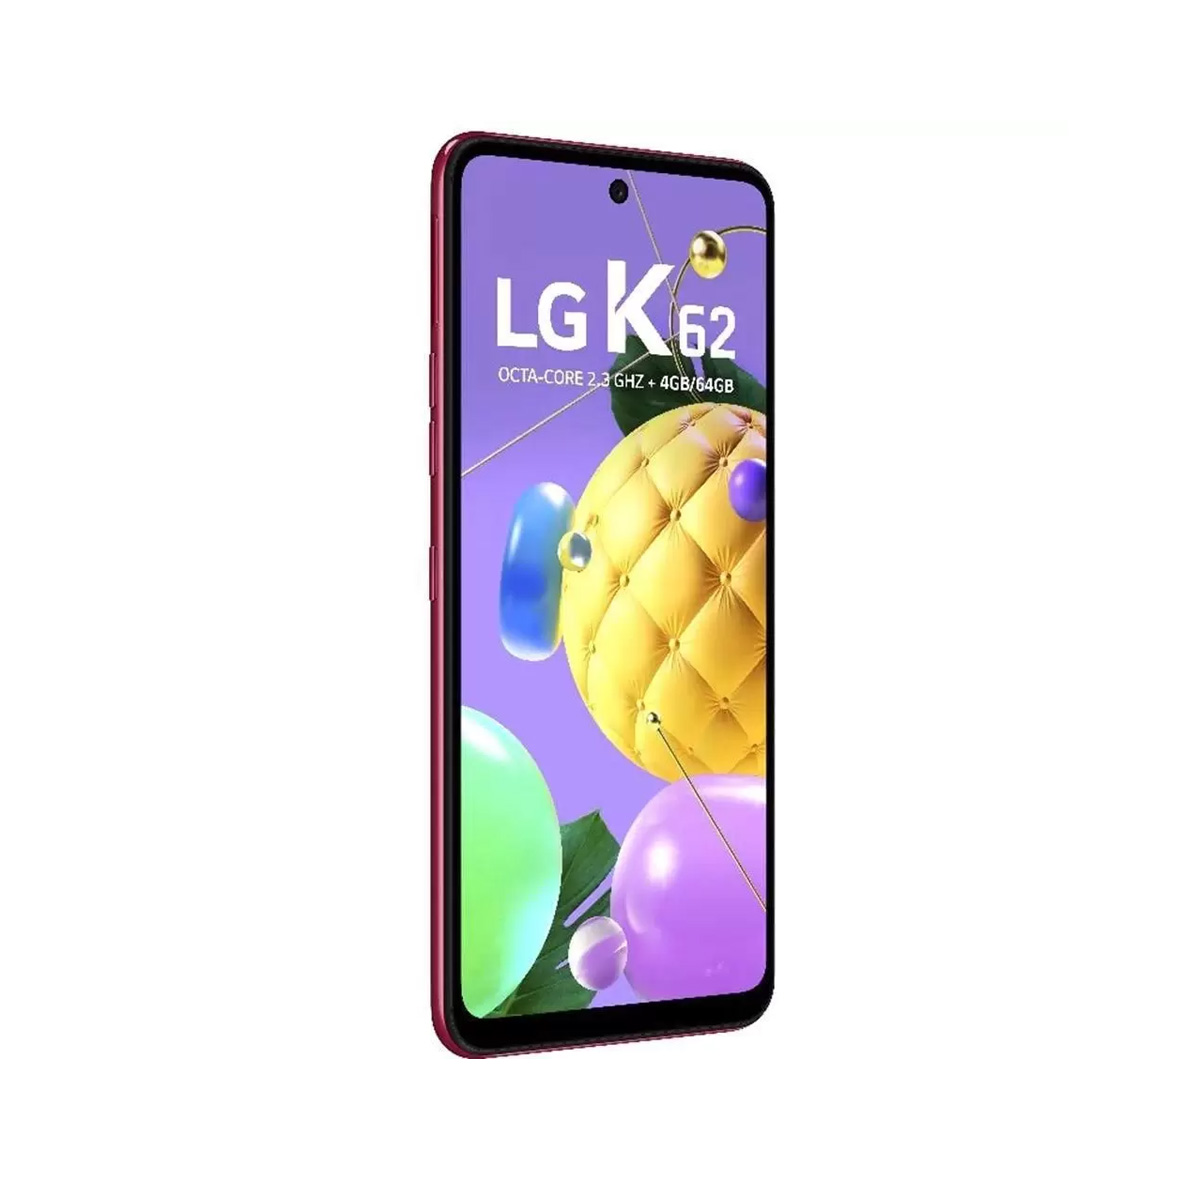 LG K62 K520 64gb 4g Dual Tela 6.59' 4gb Ram - Mostruário